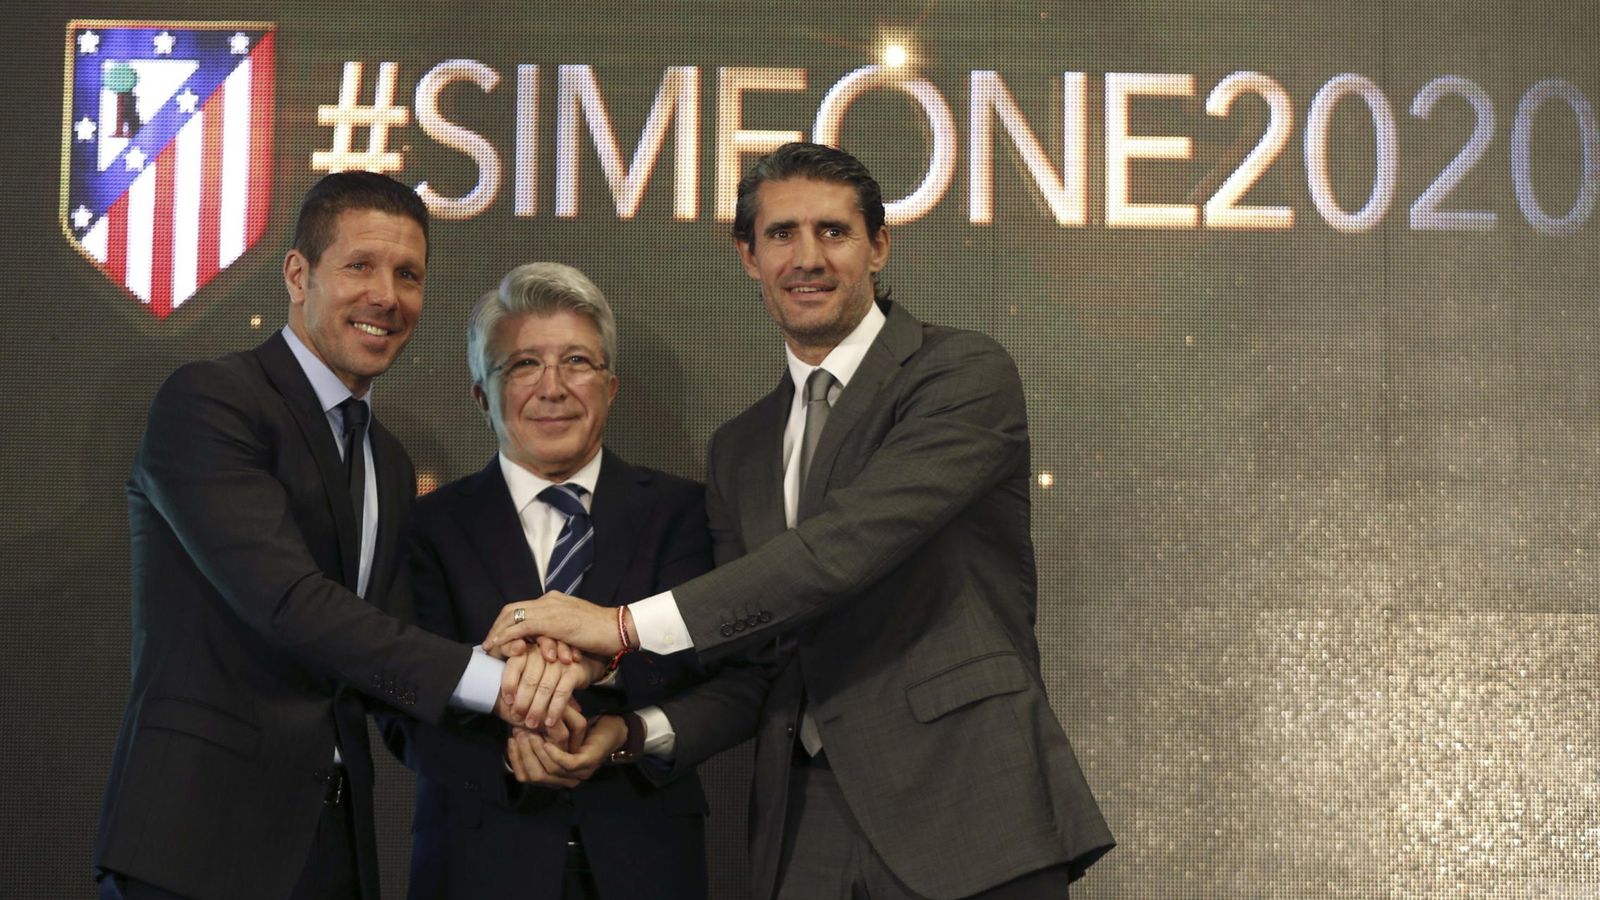 Foto: Simeone junto a Cerezo y Caminero durante la presentación del acuerdo de renovación de su contrato.